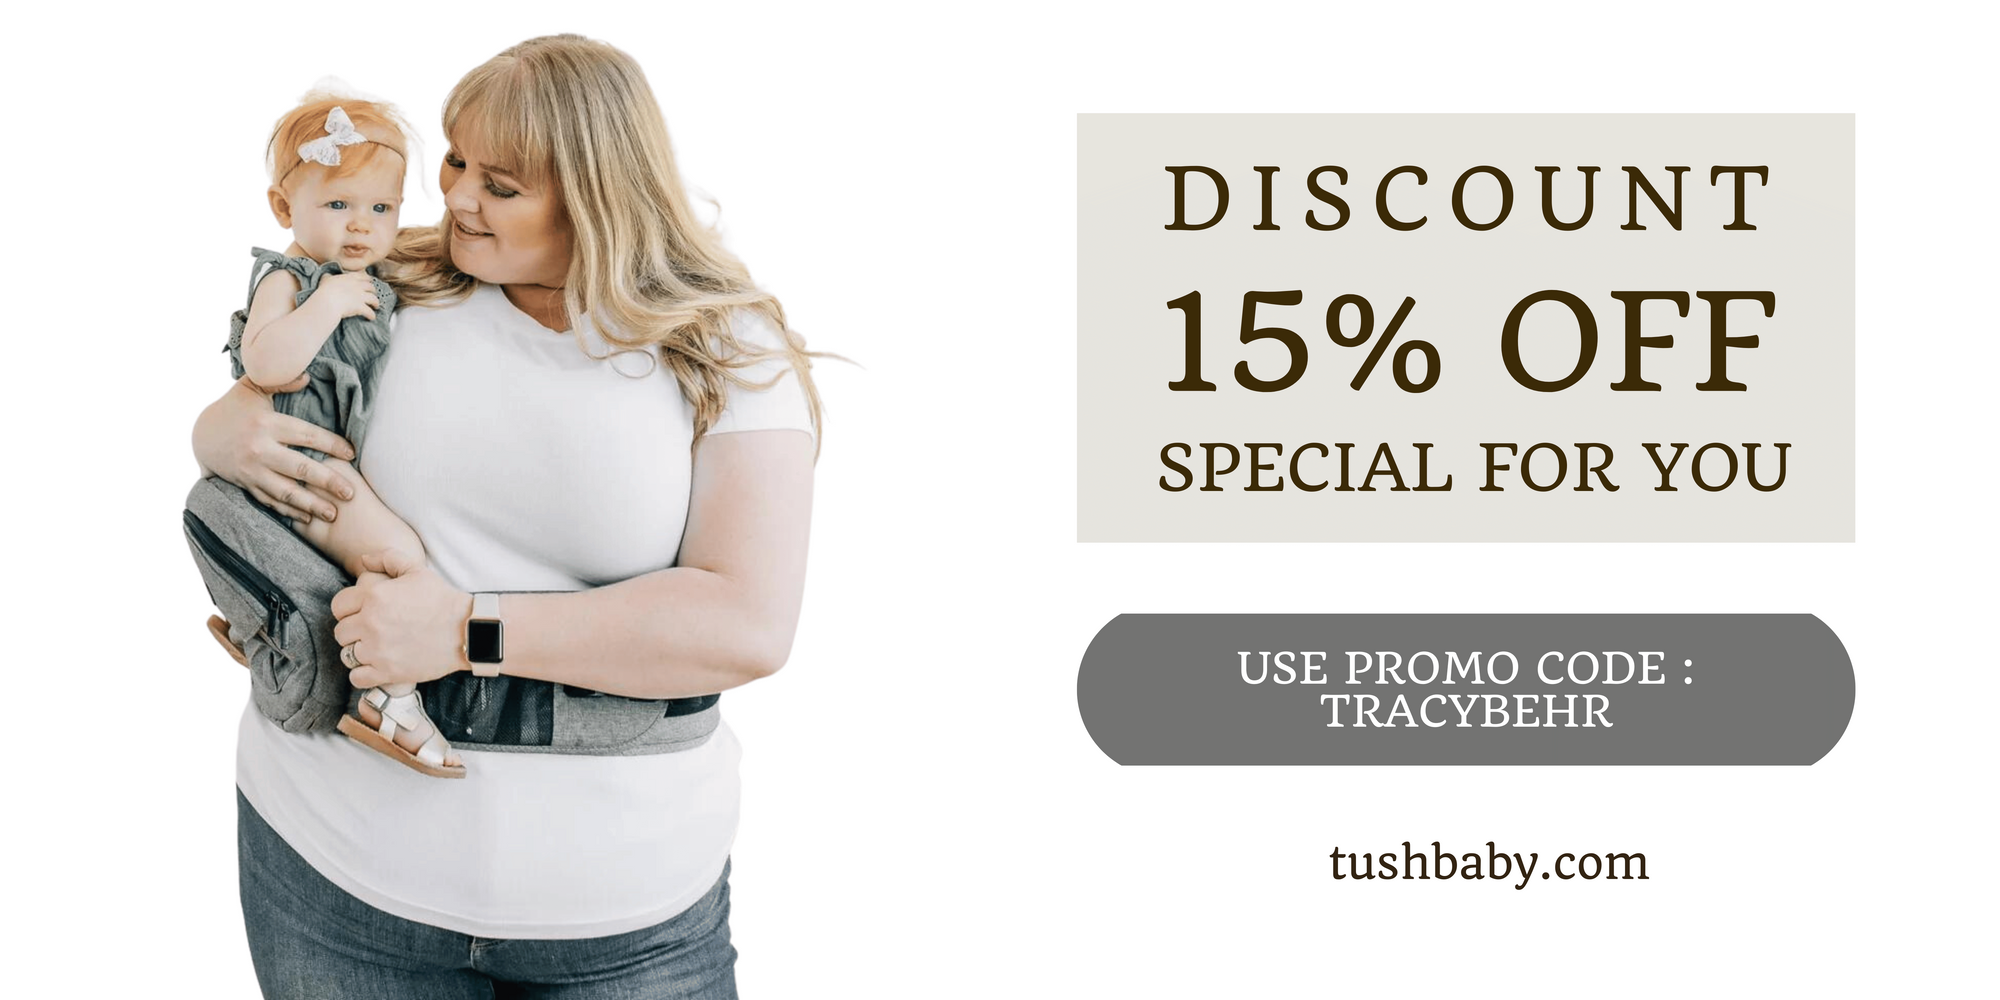 tushbaby discount, tushbaby voucher, tushbaby 15% off, tushbaby discount code, tushbaby extender discount